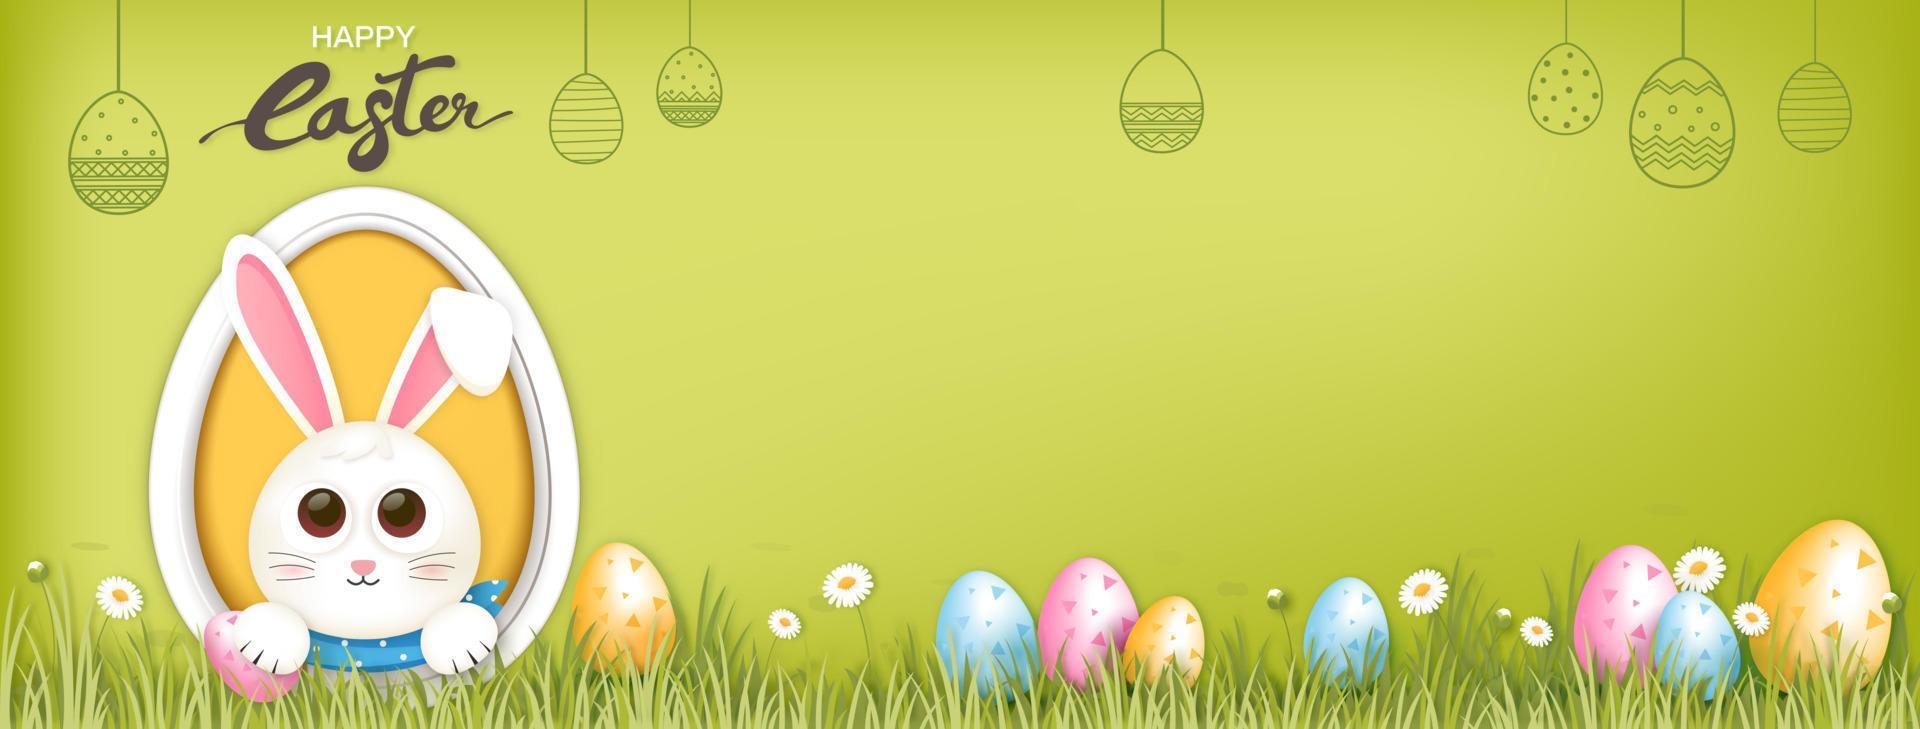 Cartoon-Stil fröhlicher Osterhase mit bunten Eiern im grünen Gartenbannerhintergrund mit Kopienraum für Ihren Text vektor